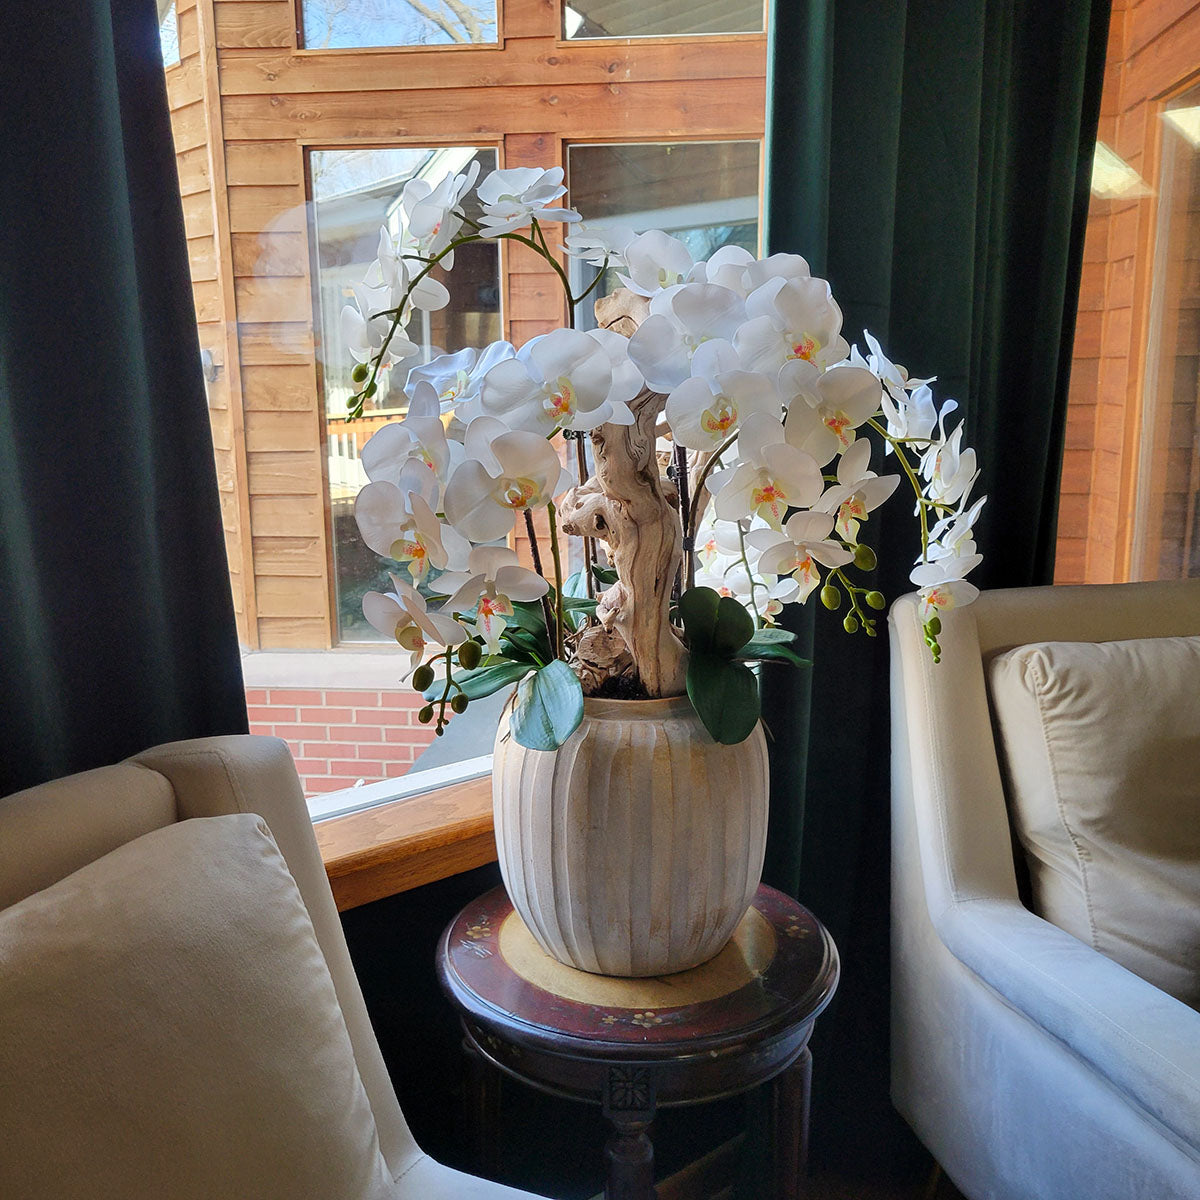 Artificial White Orchid Arrangement in Ceramic Vase